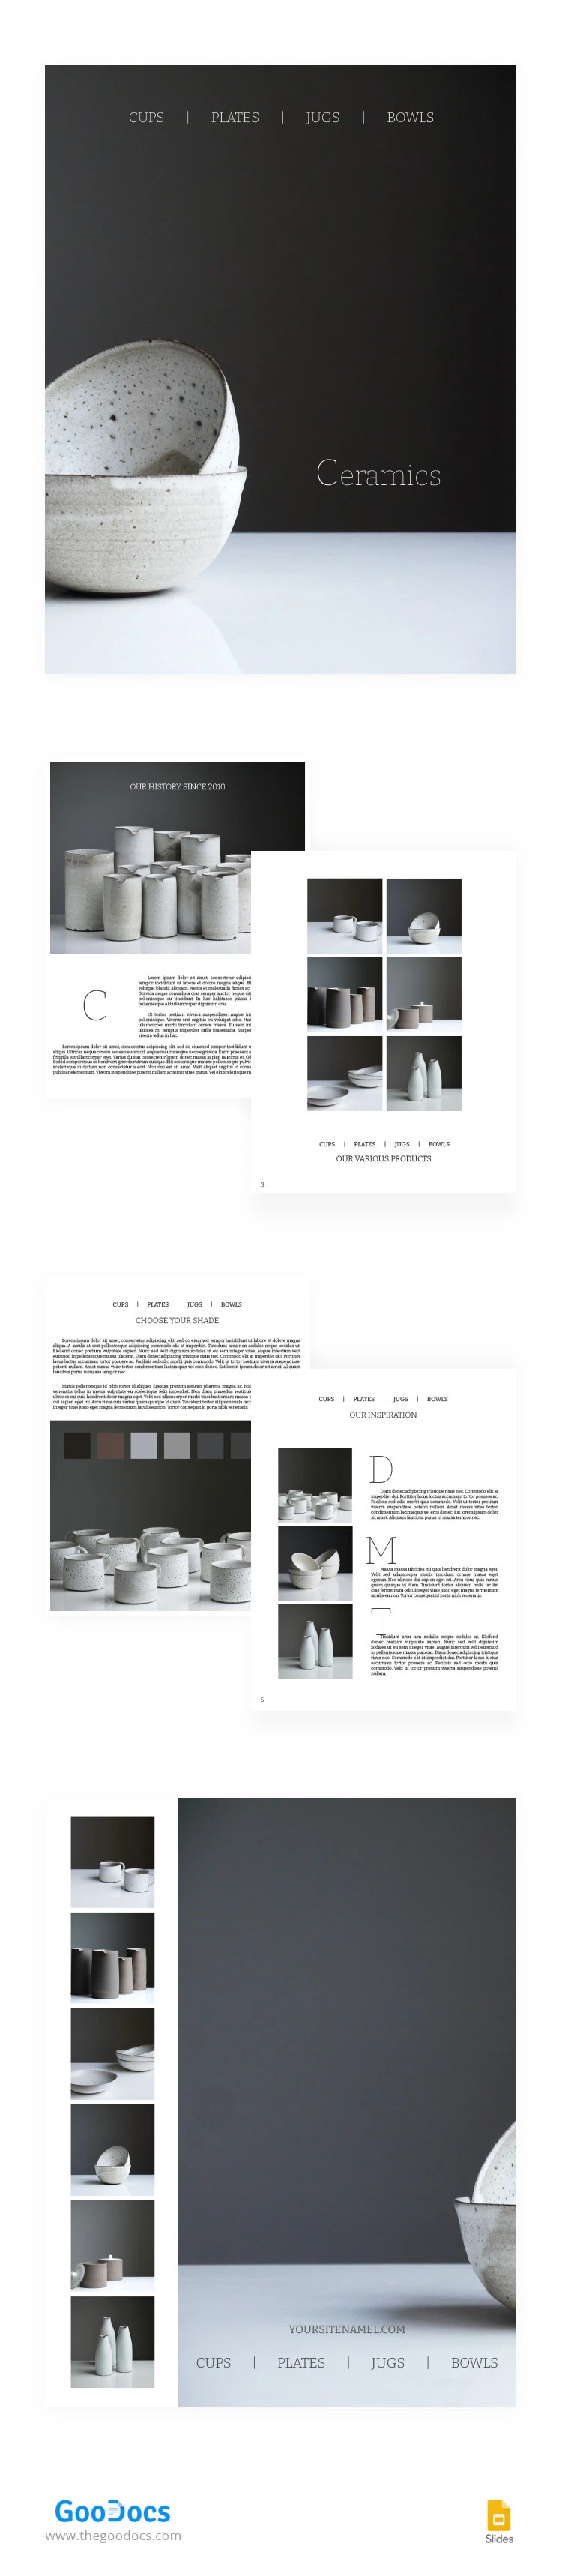 Brochura de Cerâmica Minimalista - free Google Docs Template - 10063089